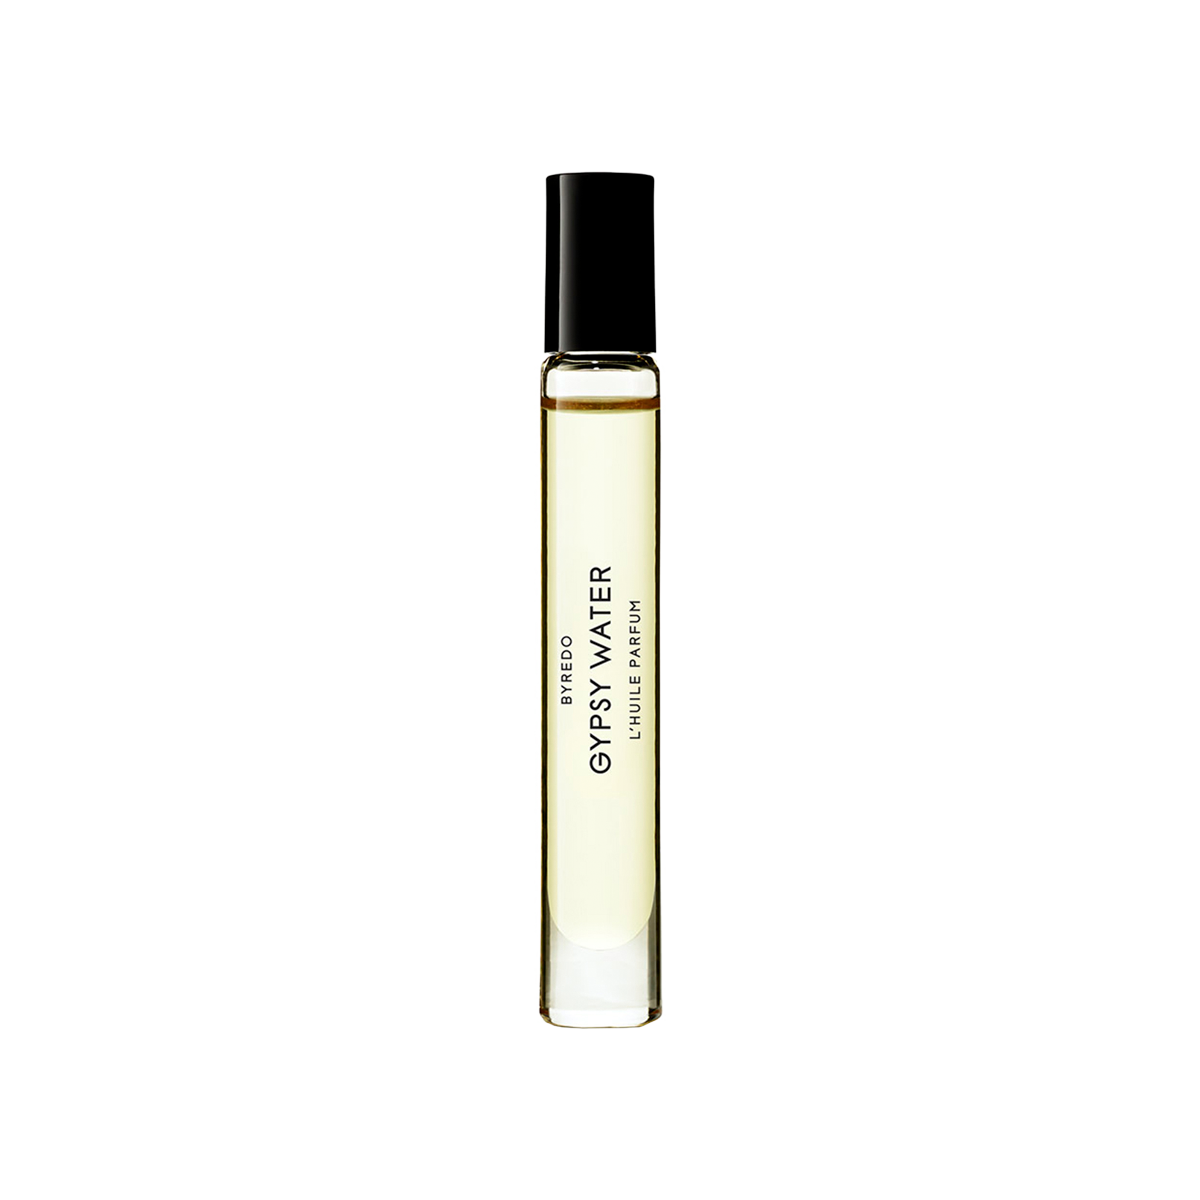 Byredo - Gypsy Water Perfume Oil